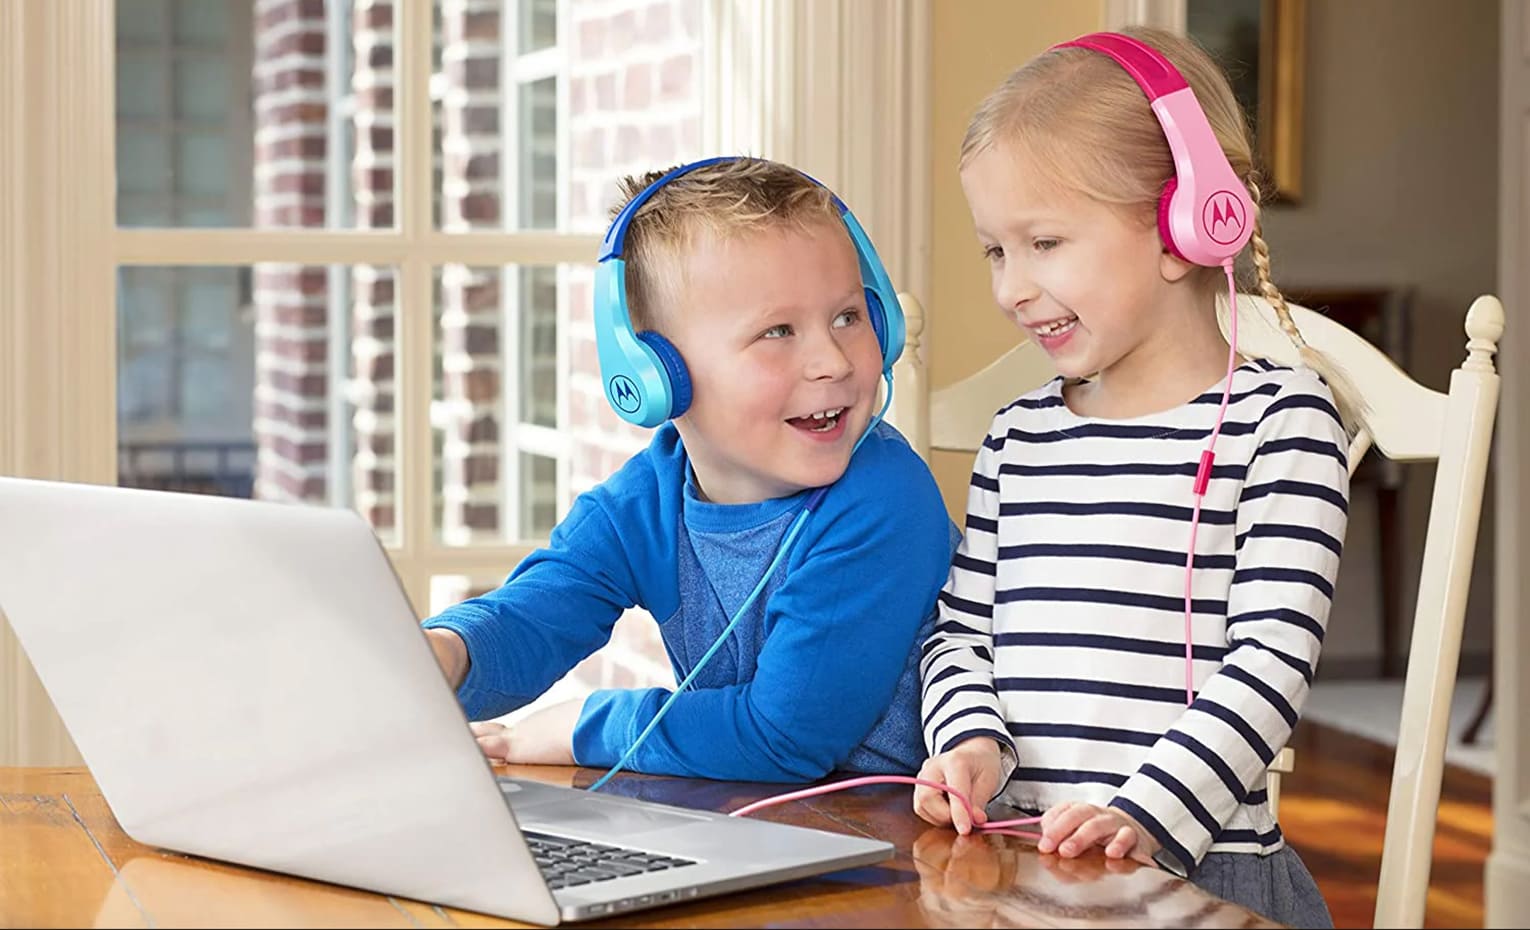 نکات قبل از خرید هدفون برای کودکان | tips before buying headphones for children